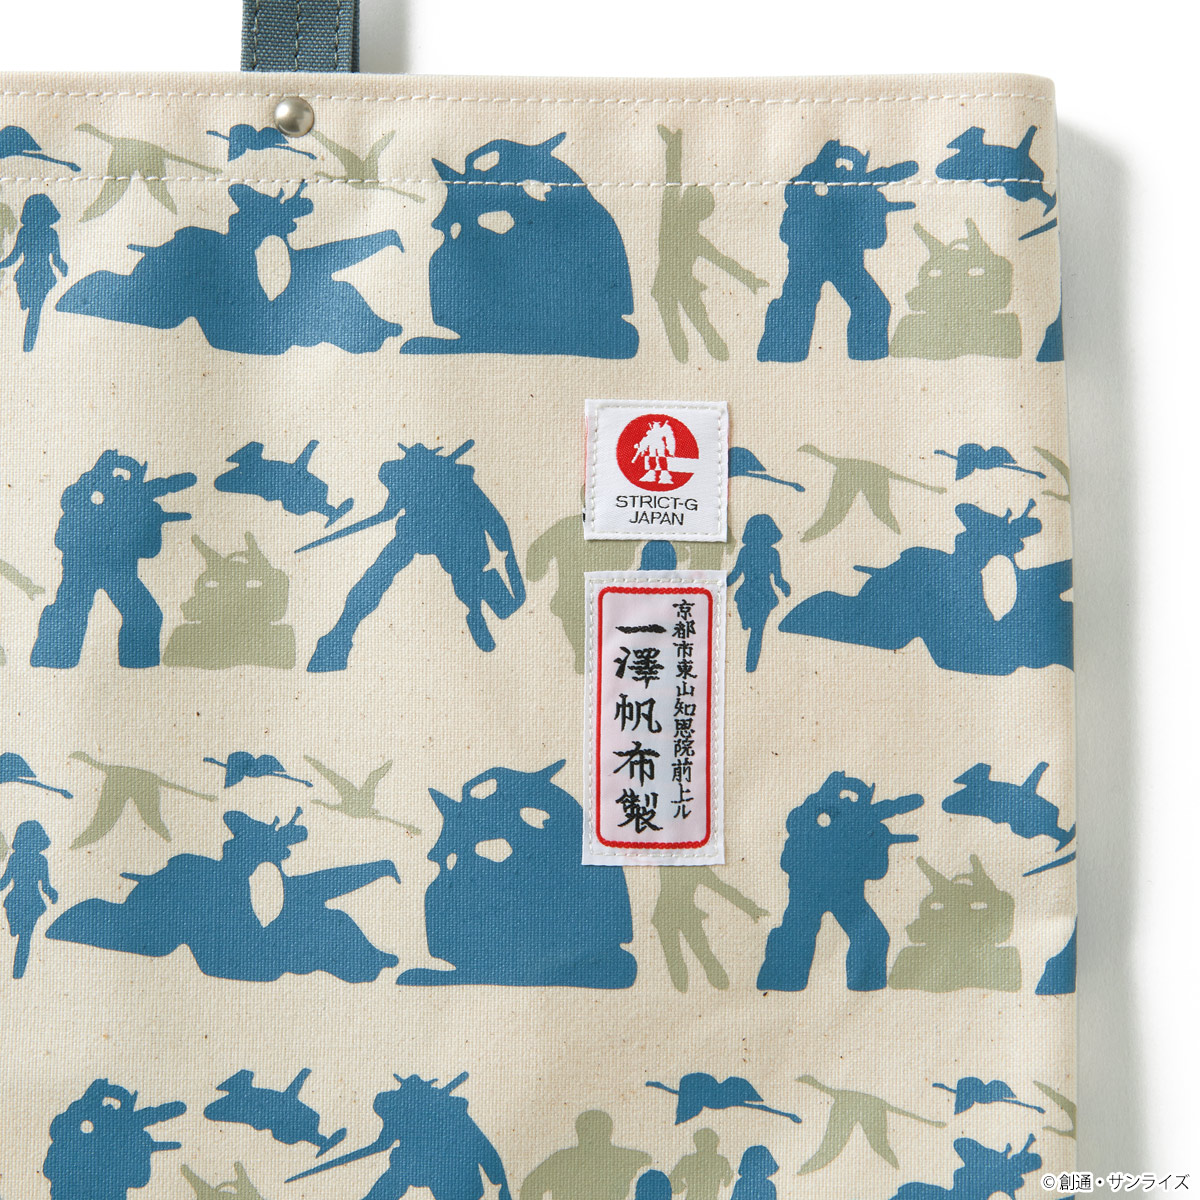 『機動戦士ガンダム』モチーフにしたSTRICT-G ×「一澤信三郎帆布」初のコラボレーションアイテムが登場！